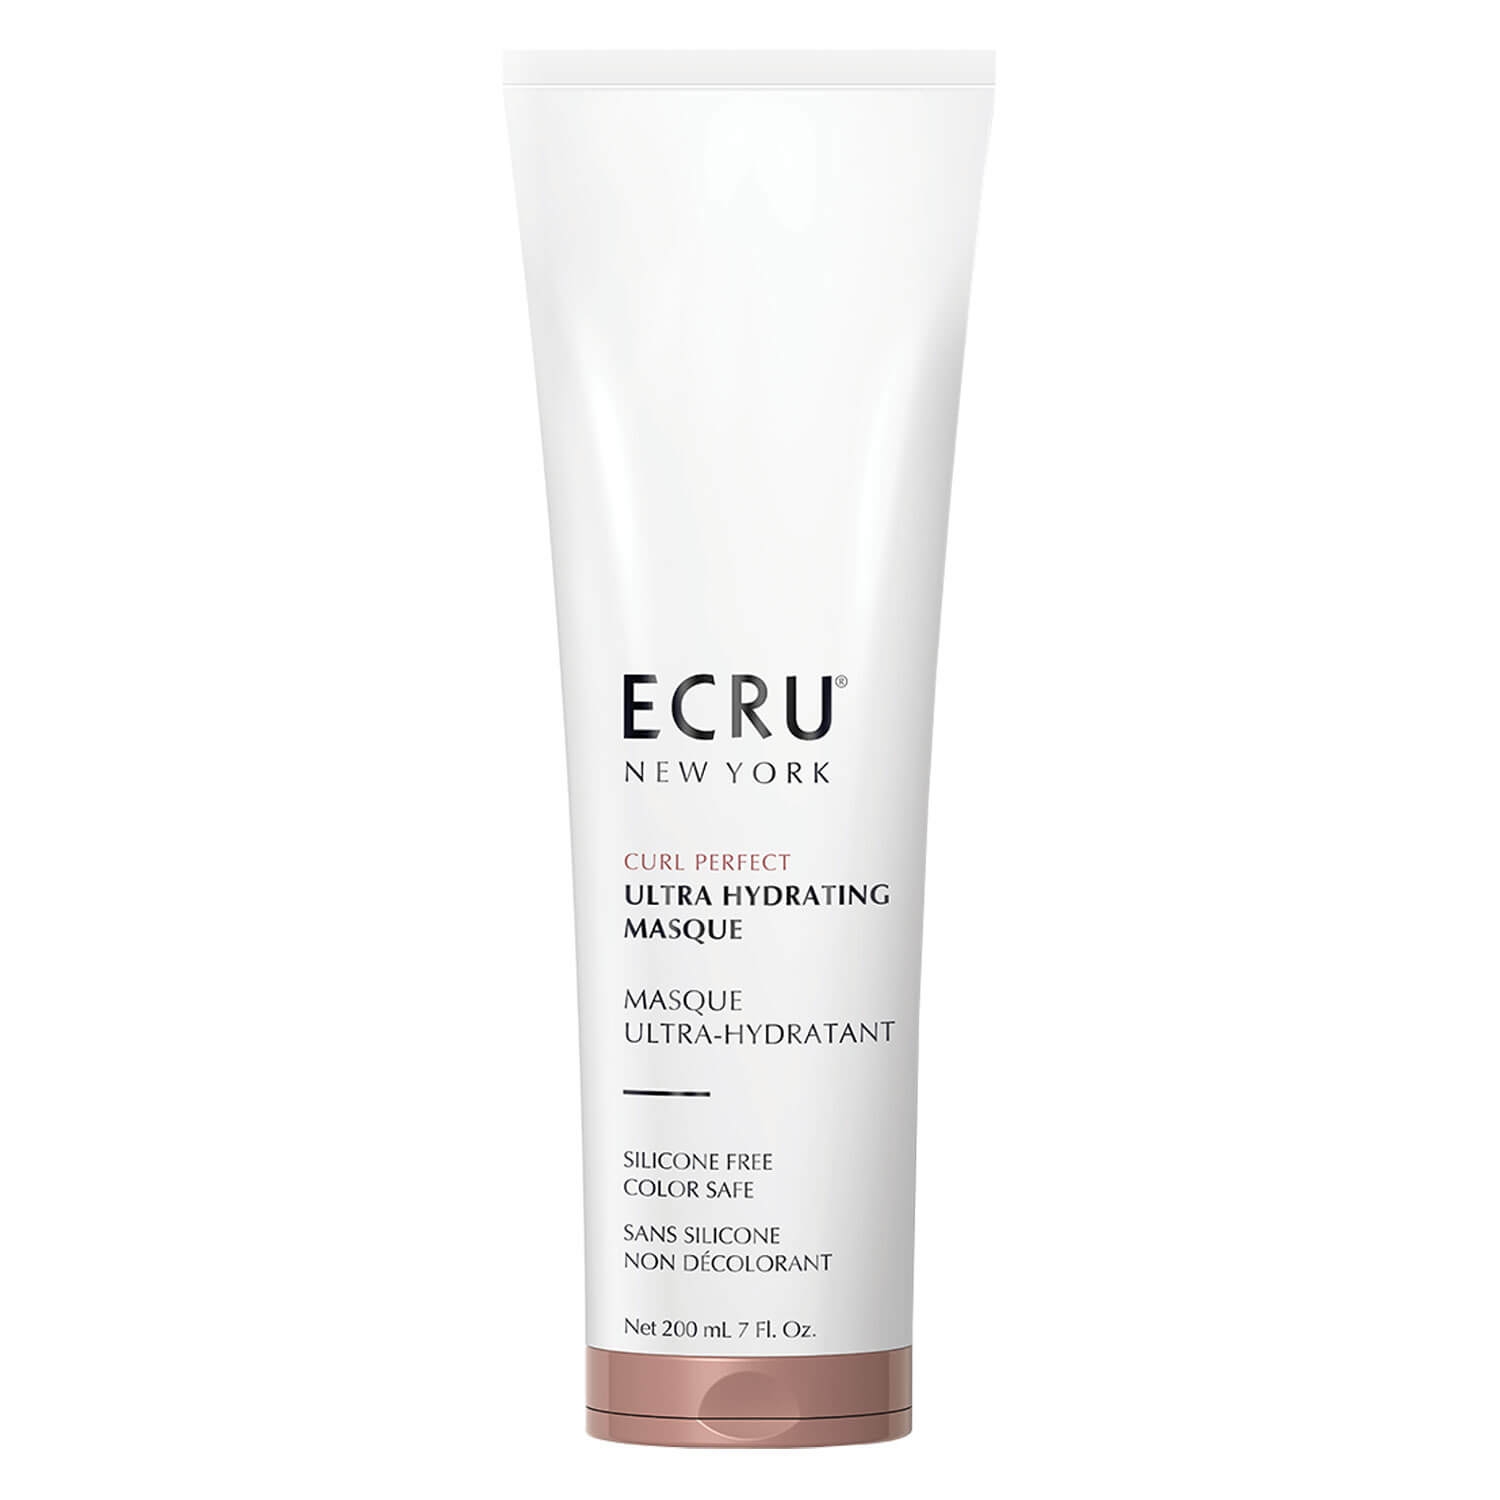 Produktbild von Ecru Curl Perfect - Ultra Hydrating Masque Tube